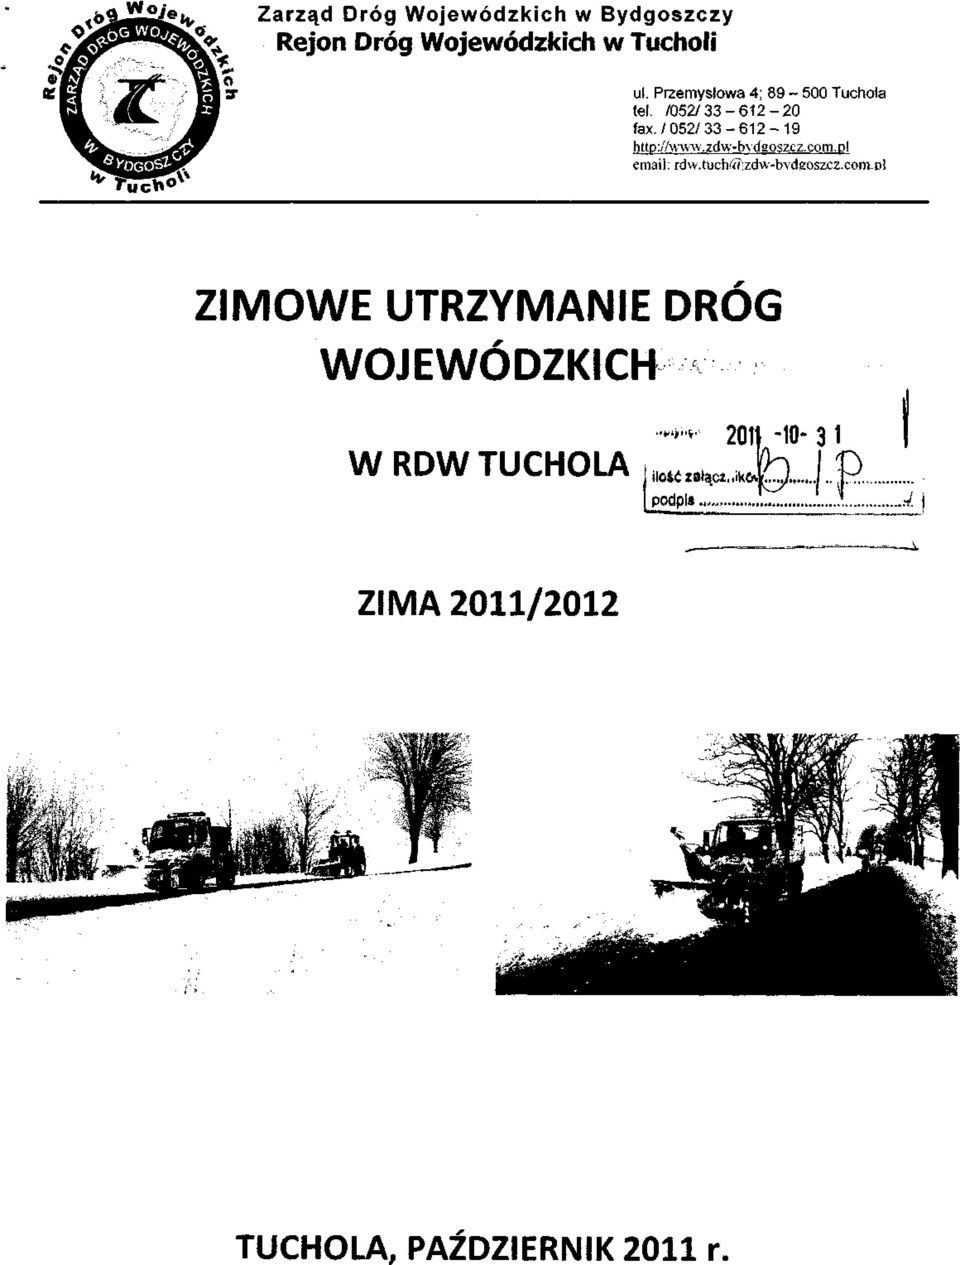 zdwbydgoszcz. com.pl email: rdw.tuchc«;zdwbydeoszcz.com.dl ZIMOWE UTRZYMANIE DRÓG WOJEWÓDZKICH W RDW TUCHOLA ilo4ćzałąc*,.